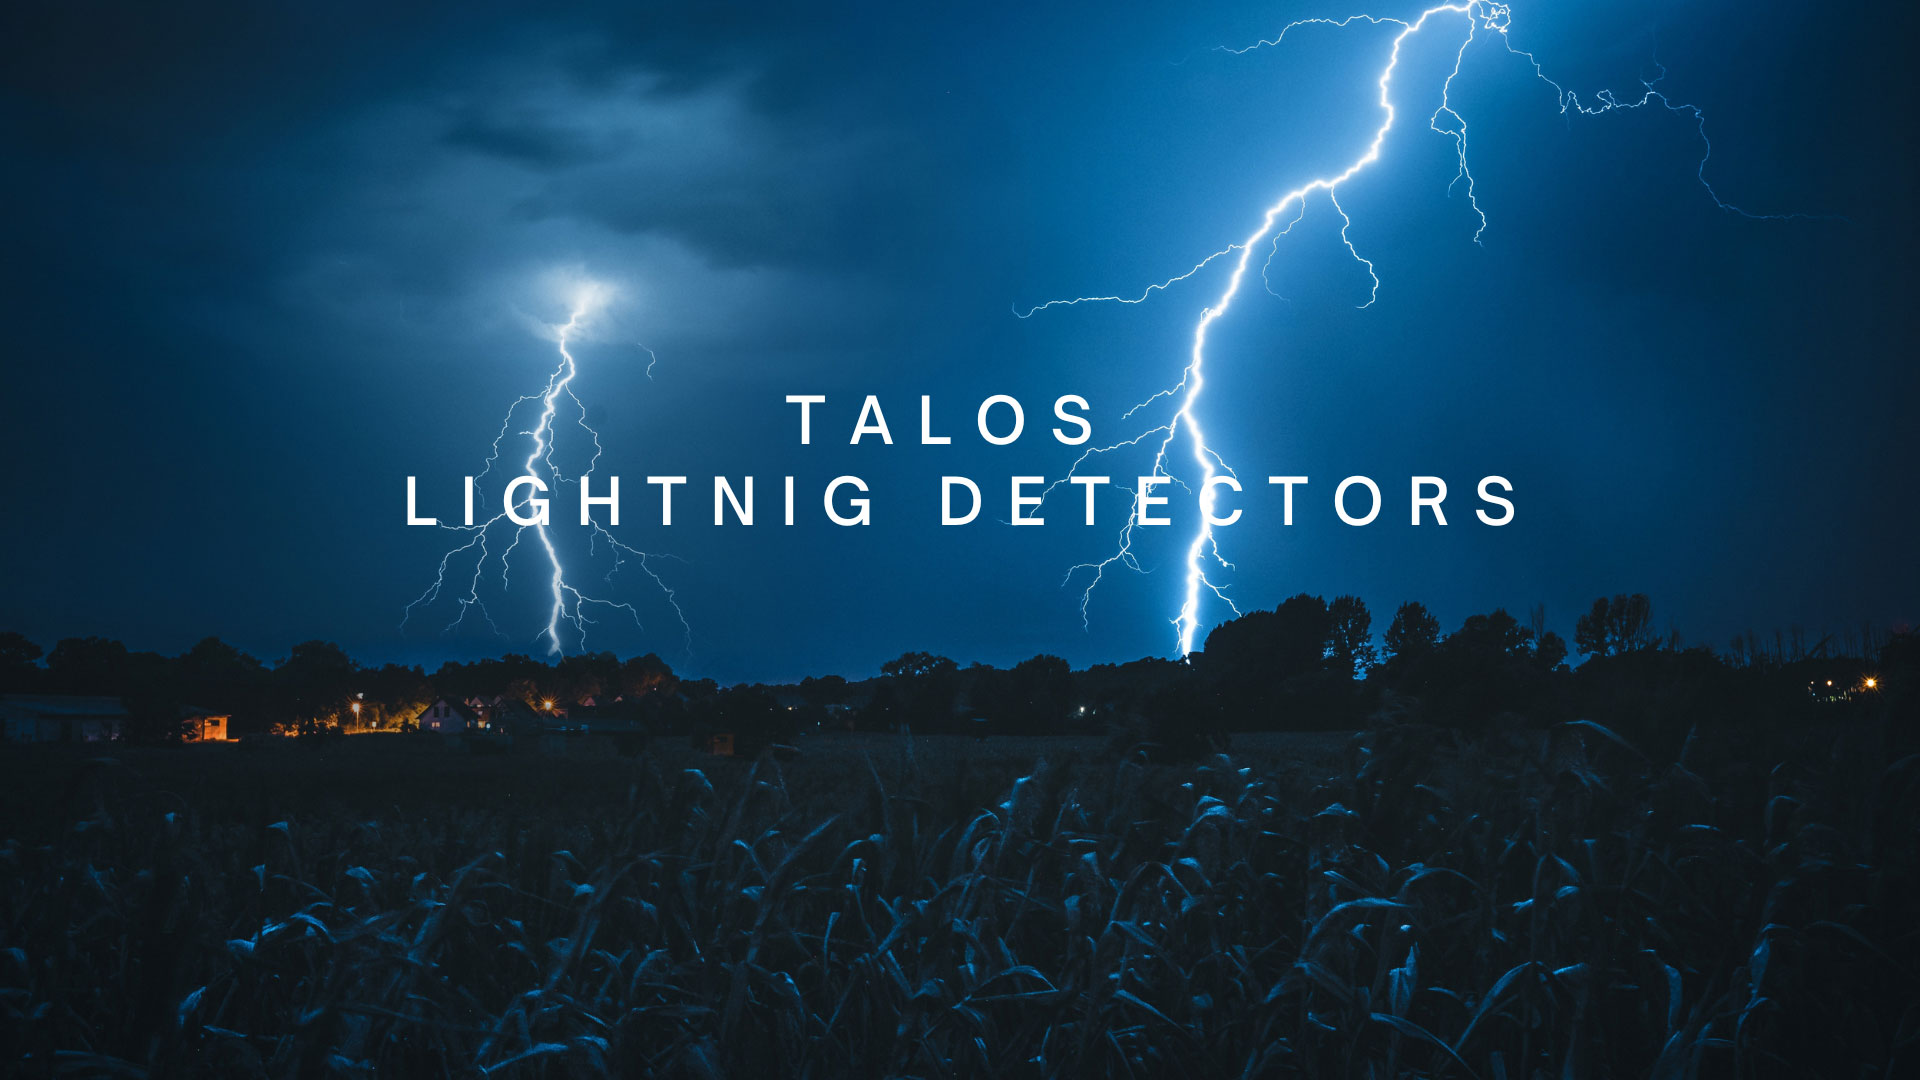 TALOS Lightning Detectors image